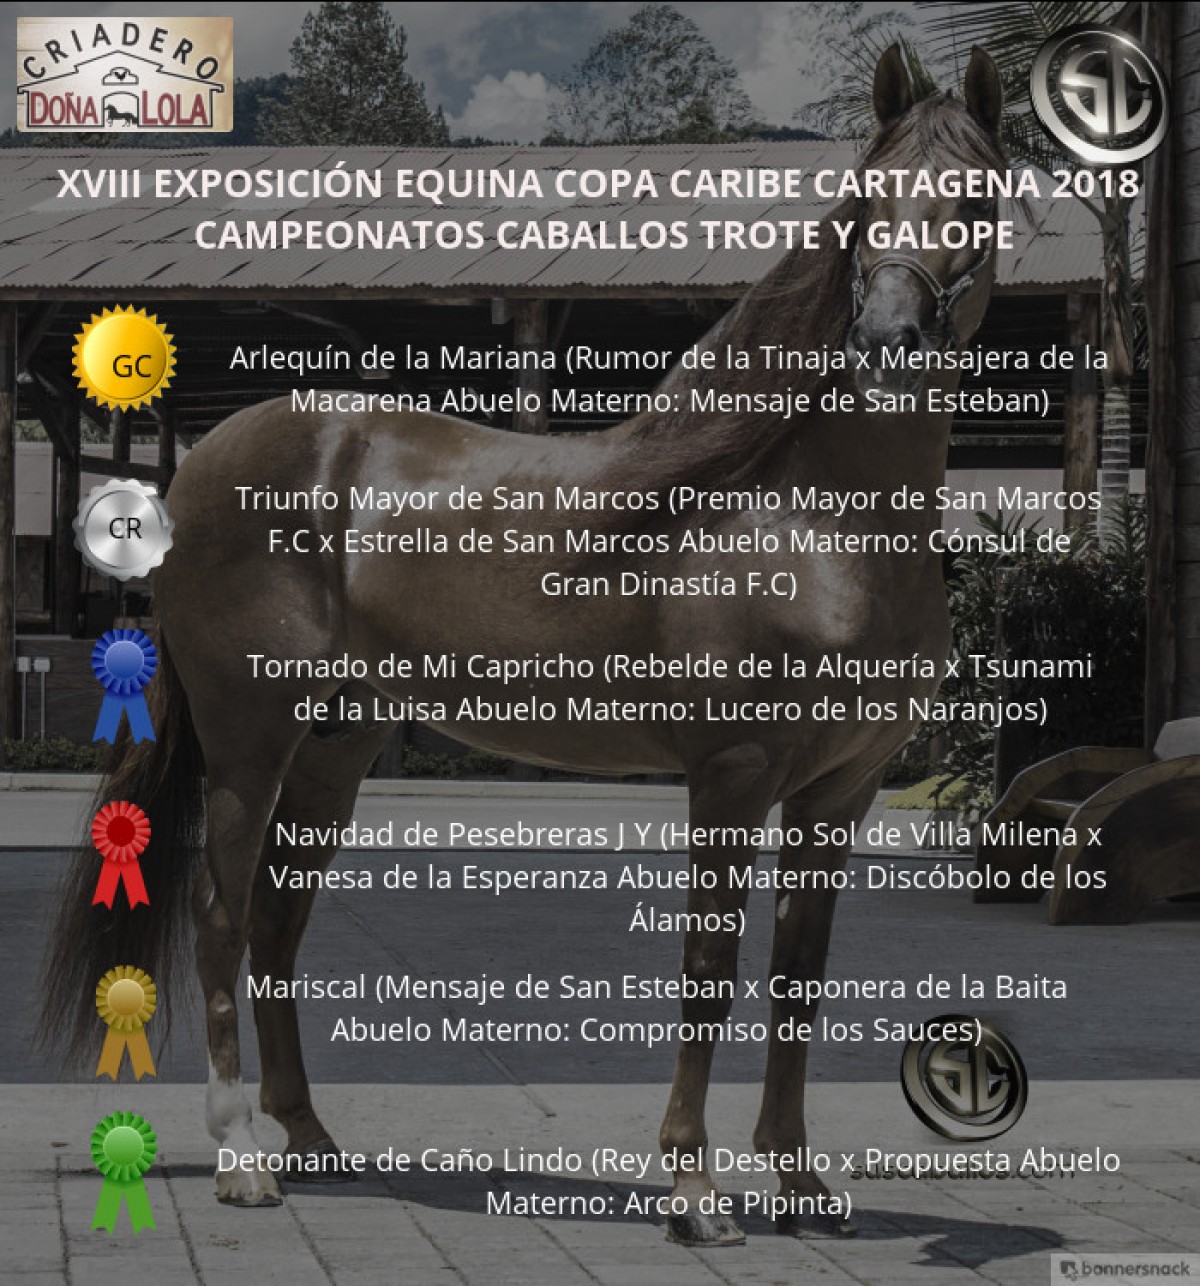 VÍDEO: Arlequín Campeón, Triunfo Reservado, Trote Y Galope,Copa Caribe Cartagena